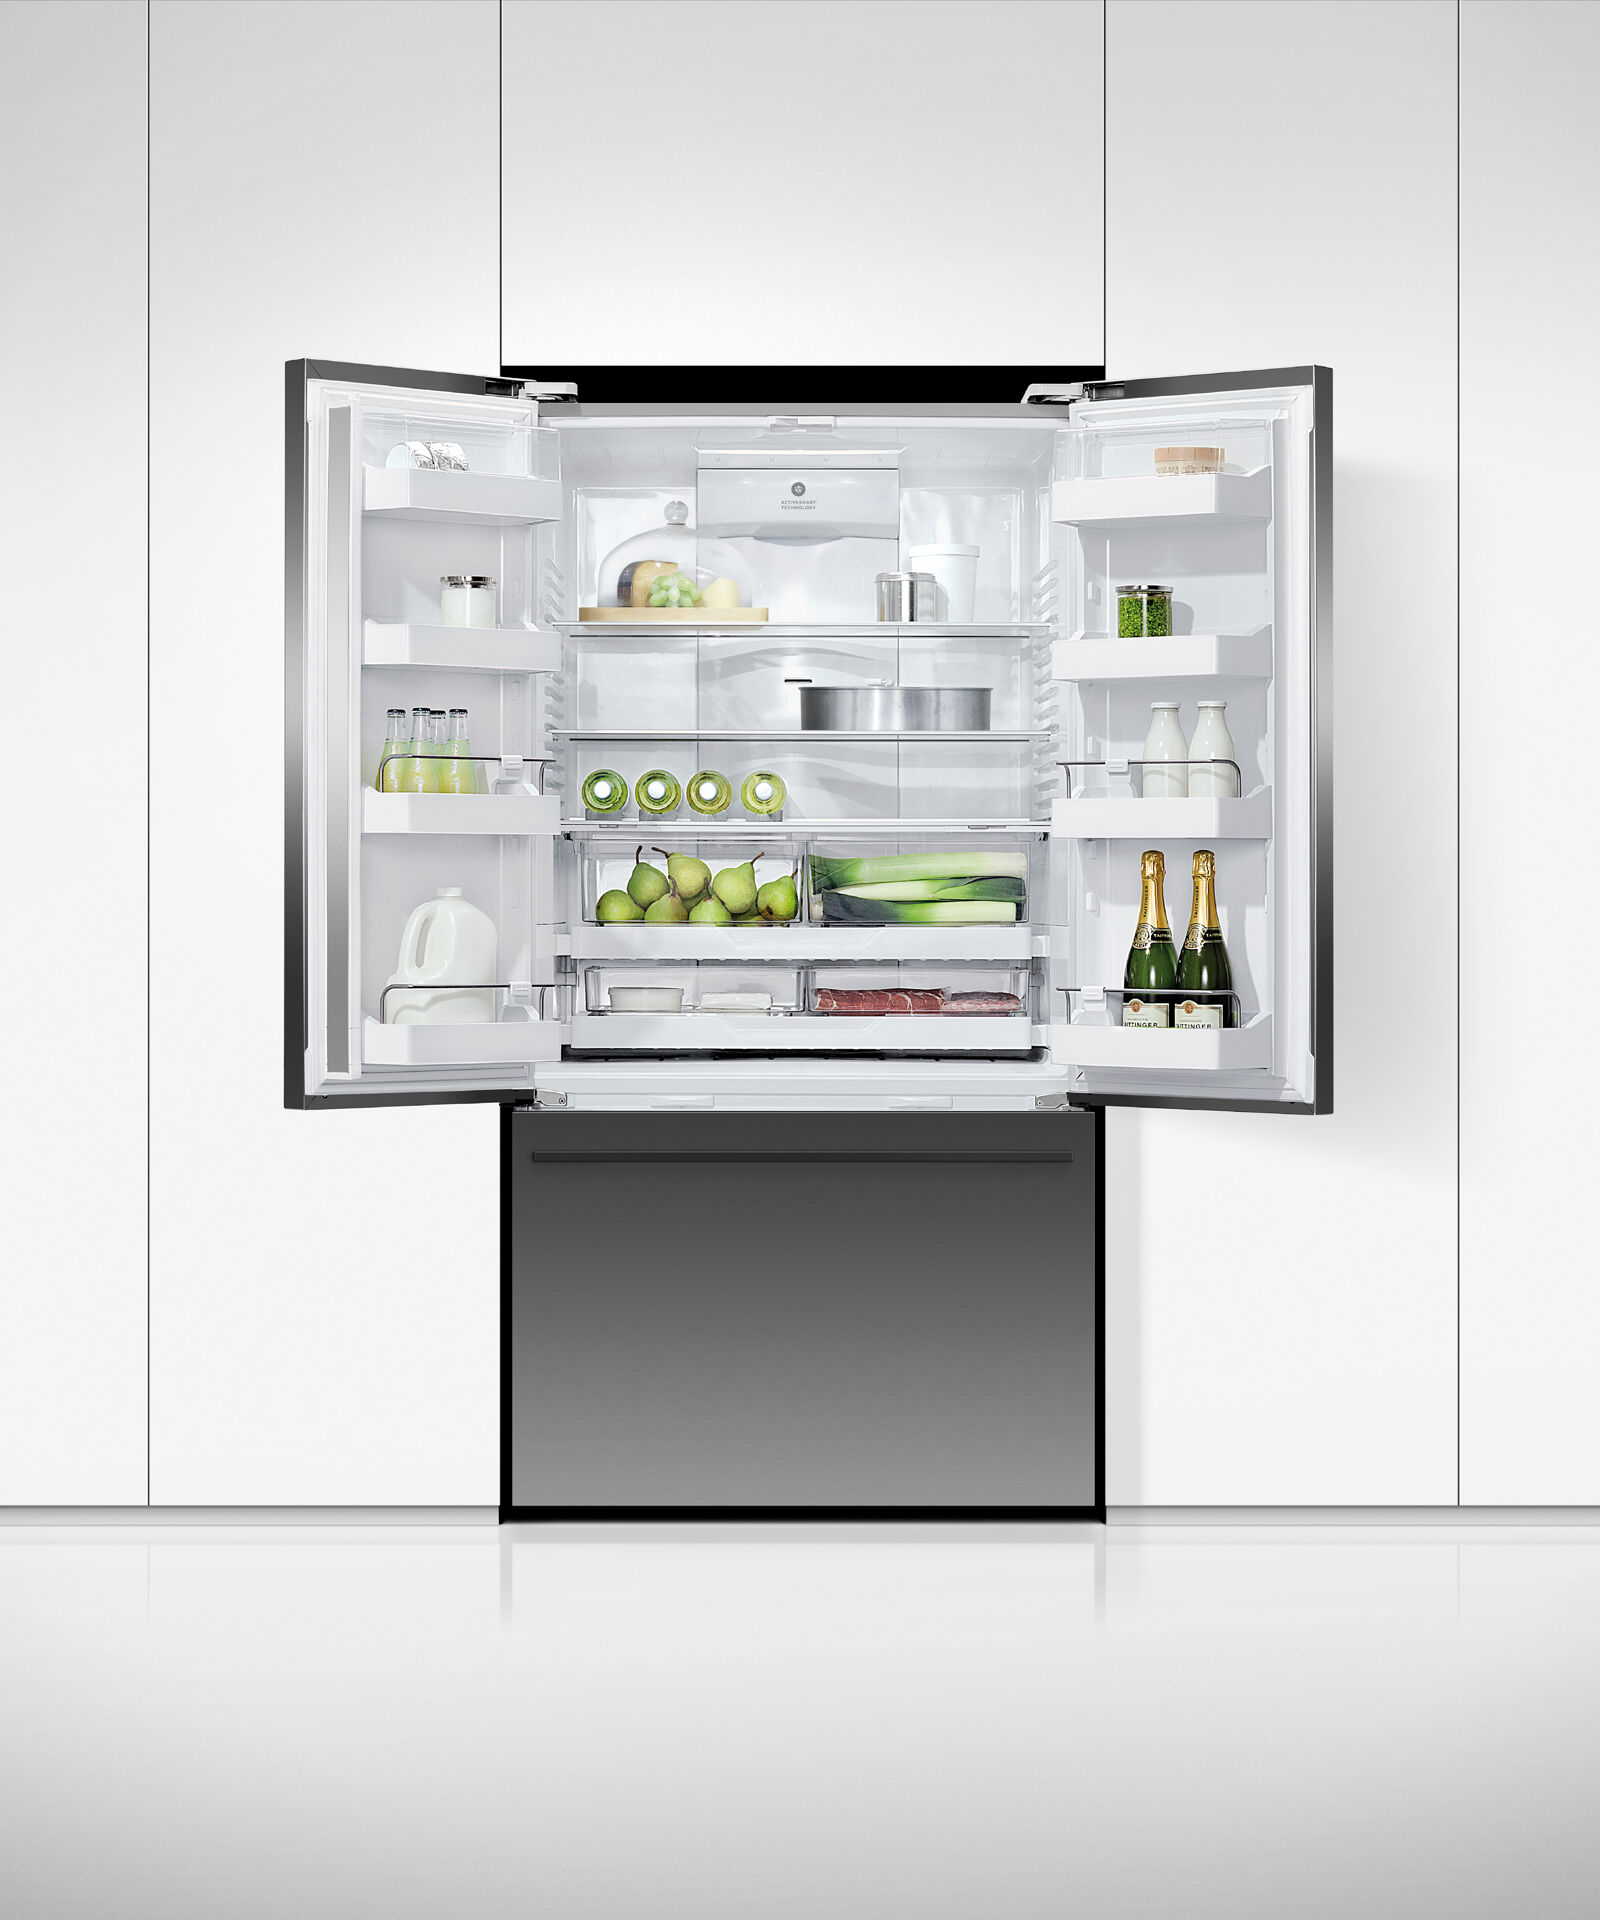 Freestanding French Door Refrigerator Freezer, 90cm, Ice & Water gallery image 4.0